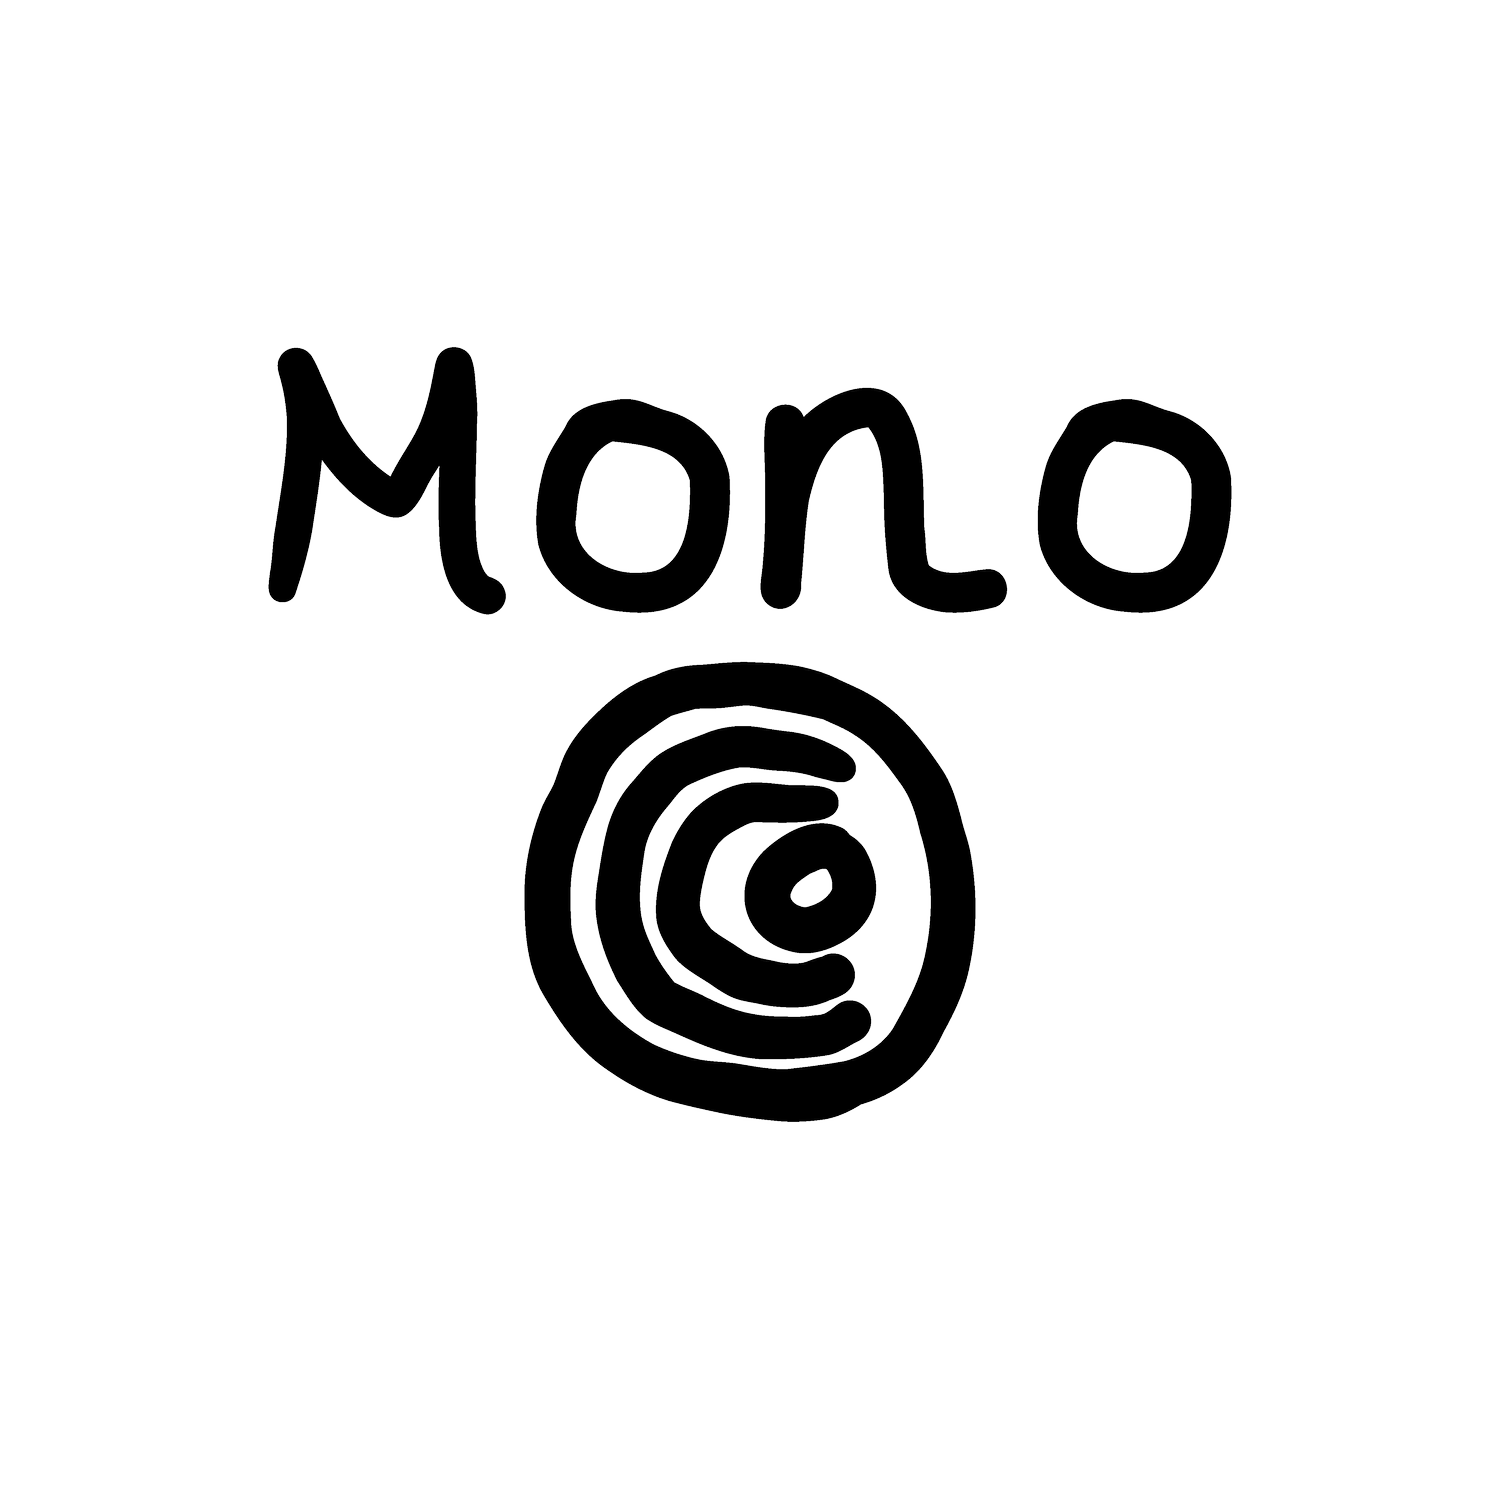 Mono CC0